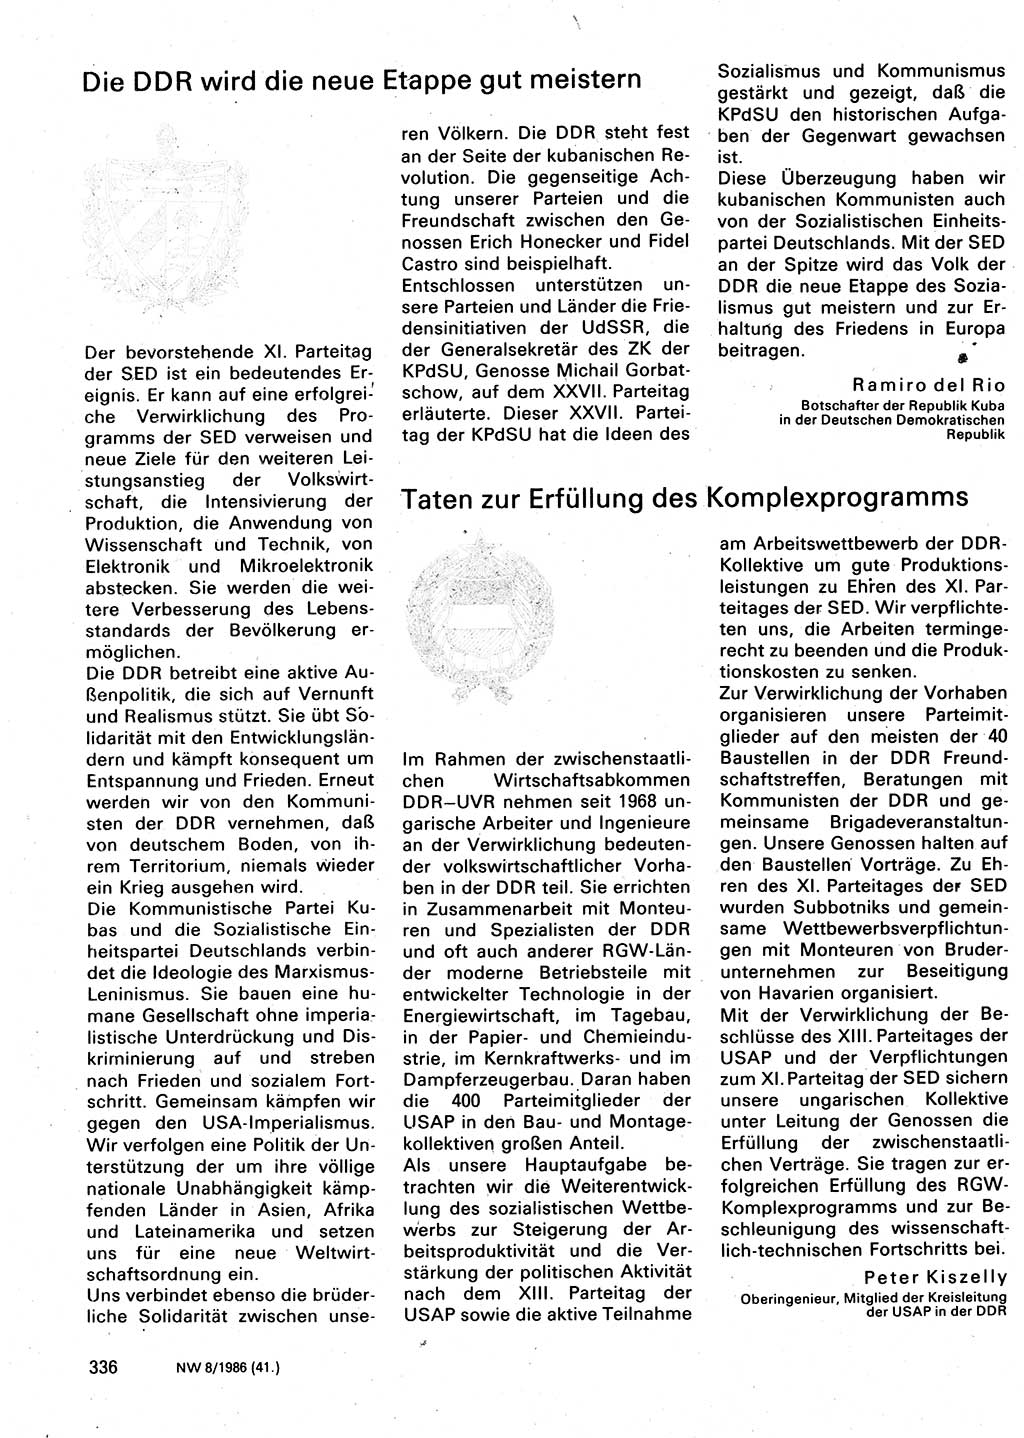 Neuer Weg (NW), Organ des Zentralkomitees (ZK) der SED (Sozialistische Einheitspartei Deutschlands) für Fragen des Parteilebens, 41. Jahrgang [Deutsche Demokratische Republik (DDR)] 1986, Seite 336 (NW ZK SED DDR 1986, S. 336)